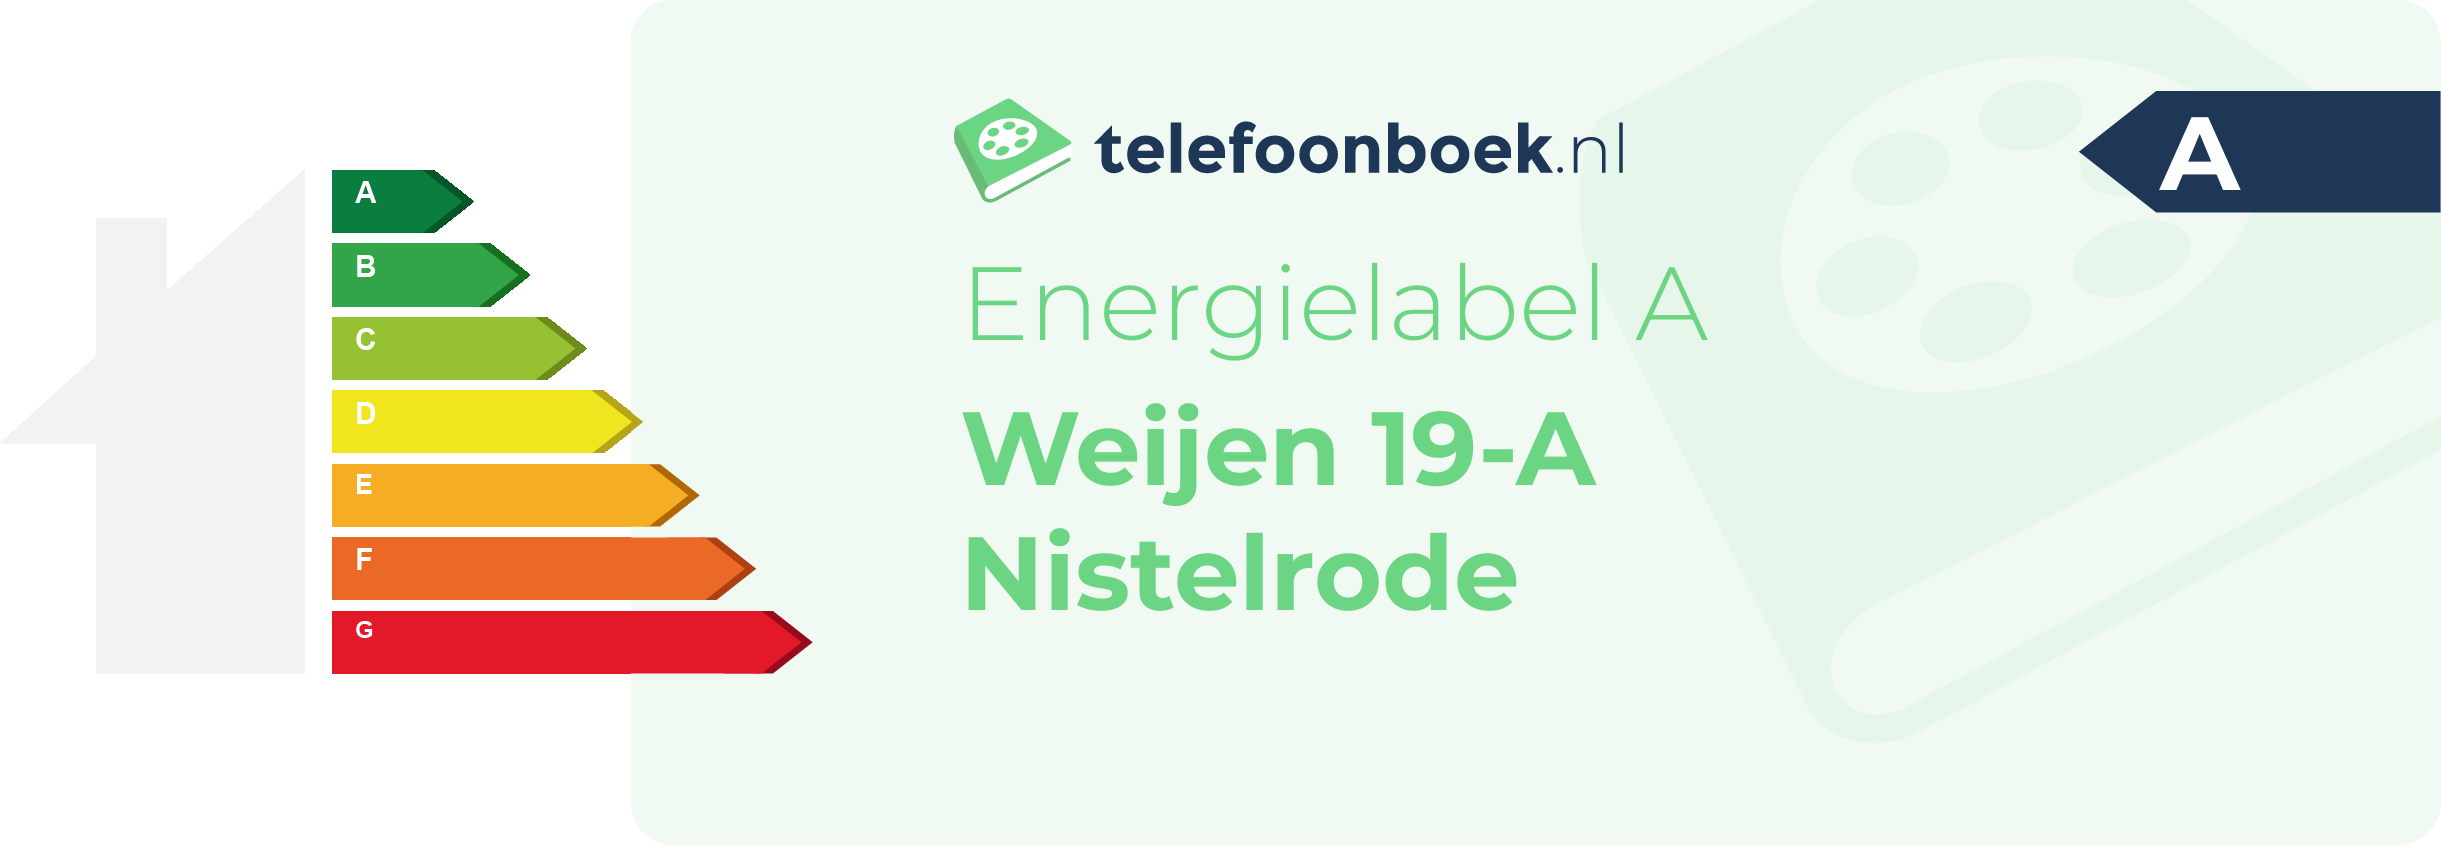 Energielabel Weijen 19-A Nistelrode